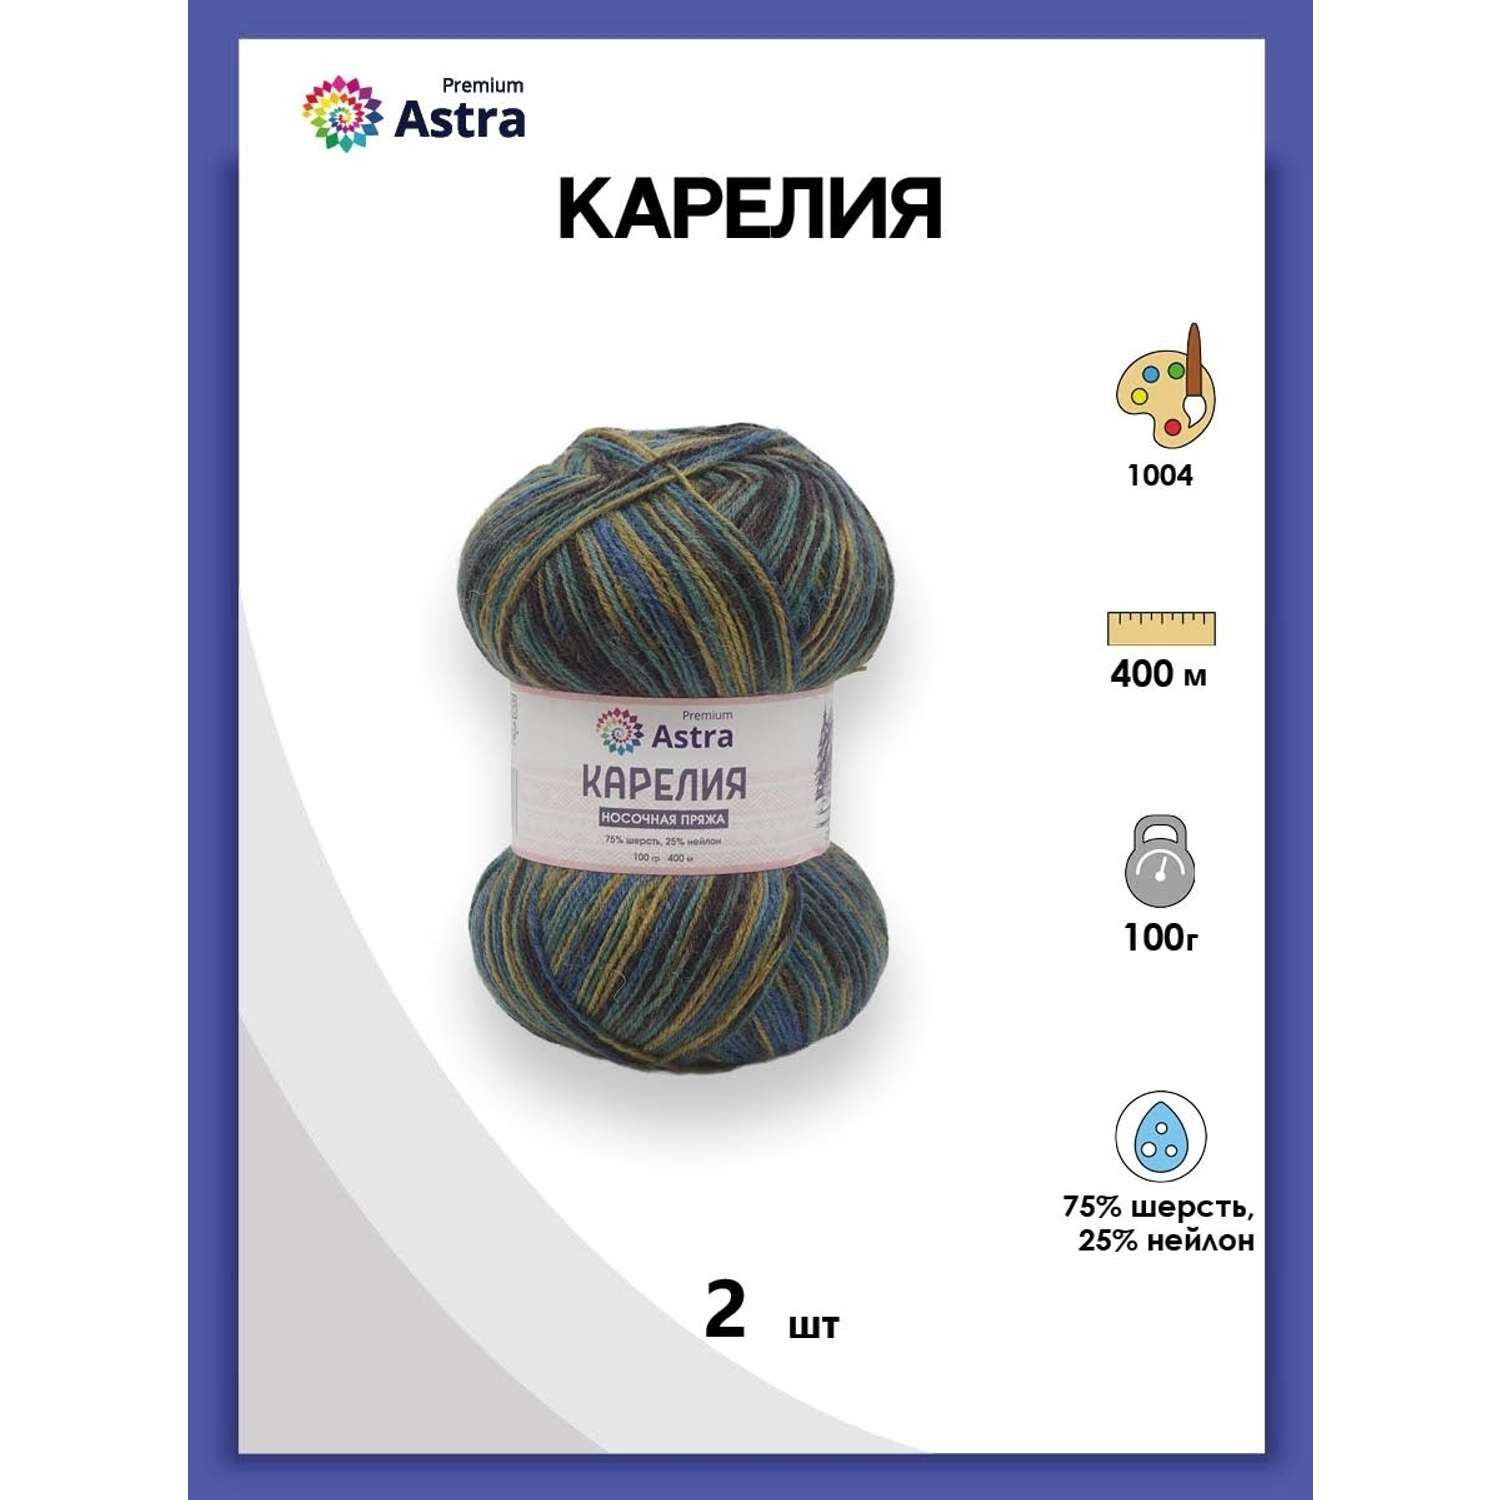 Пряжа для вязания Astra Premium карелия носочная шерсть нейлон 100 гр 400 м цвет 1004 2 мотка - фото 1